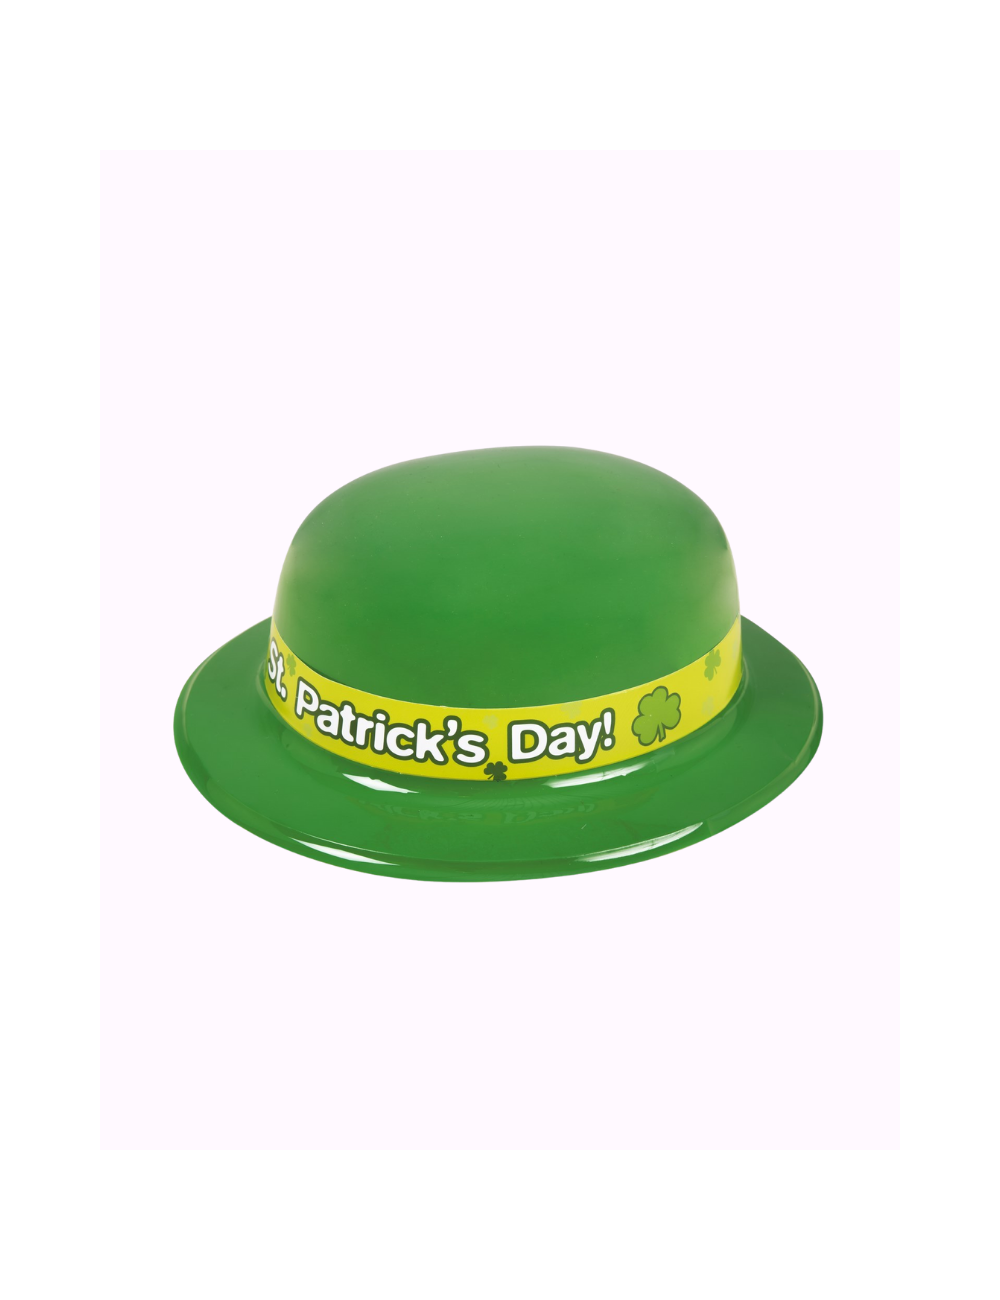 Plastikhut 'Happy St.Patrick's Day '